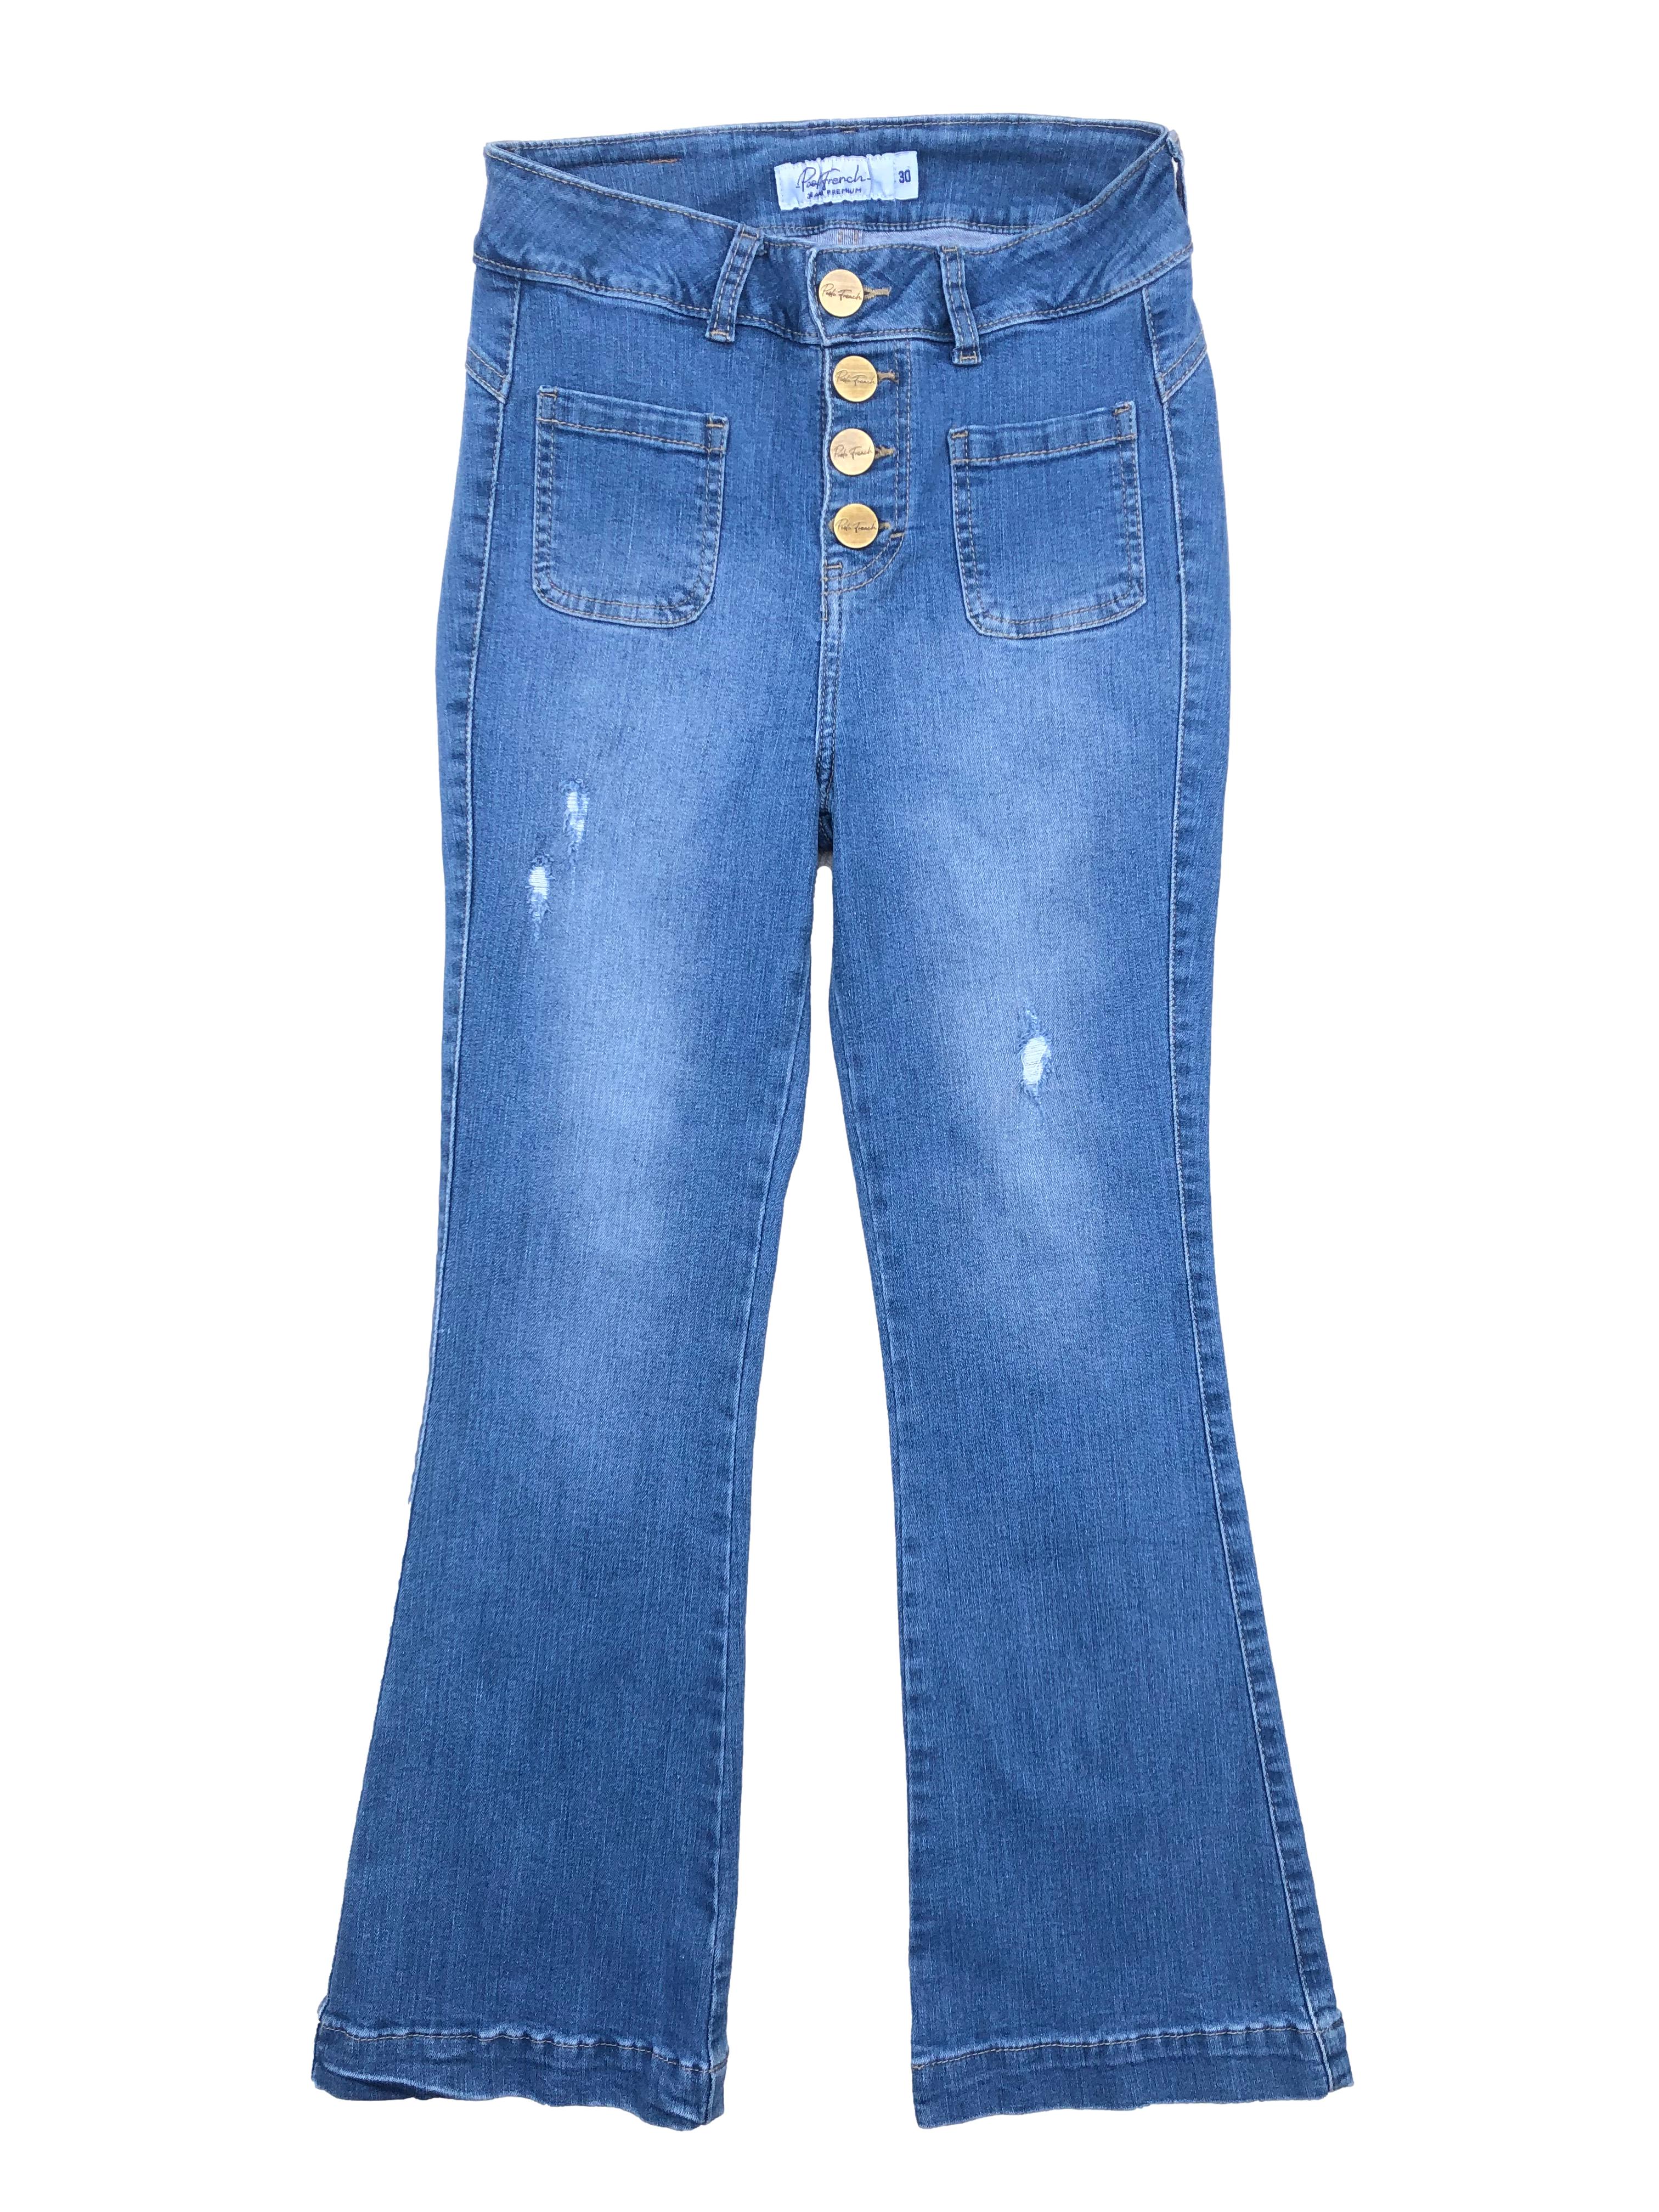 Jean azul Paola French, tela stretch con efecto lavado y rasgados, tiene bota campana, botones metálicos, cuatro bolsillos, y entalle posterior con pinzas. Cintura 64cm sin estirar, Largo 88cm.